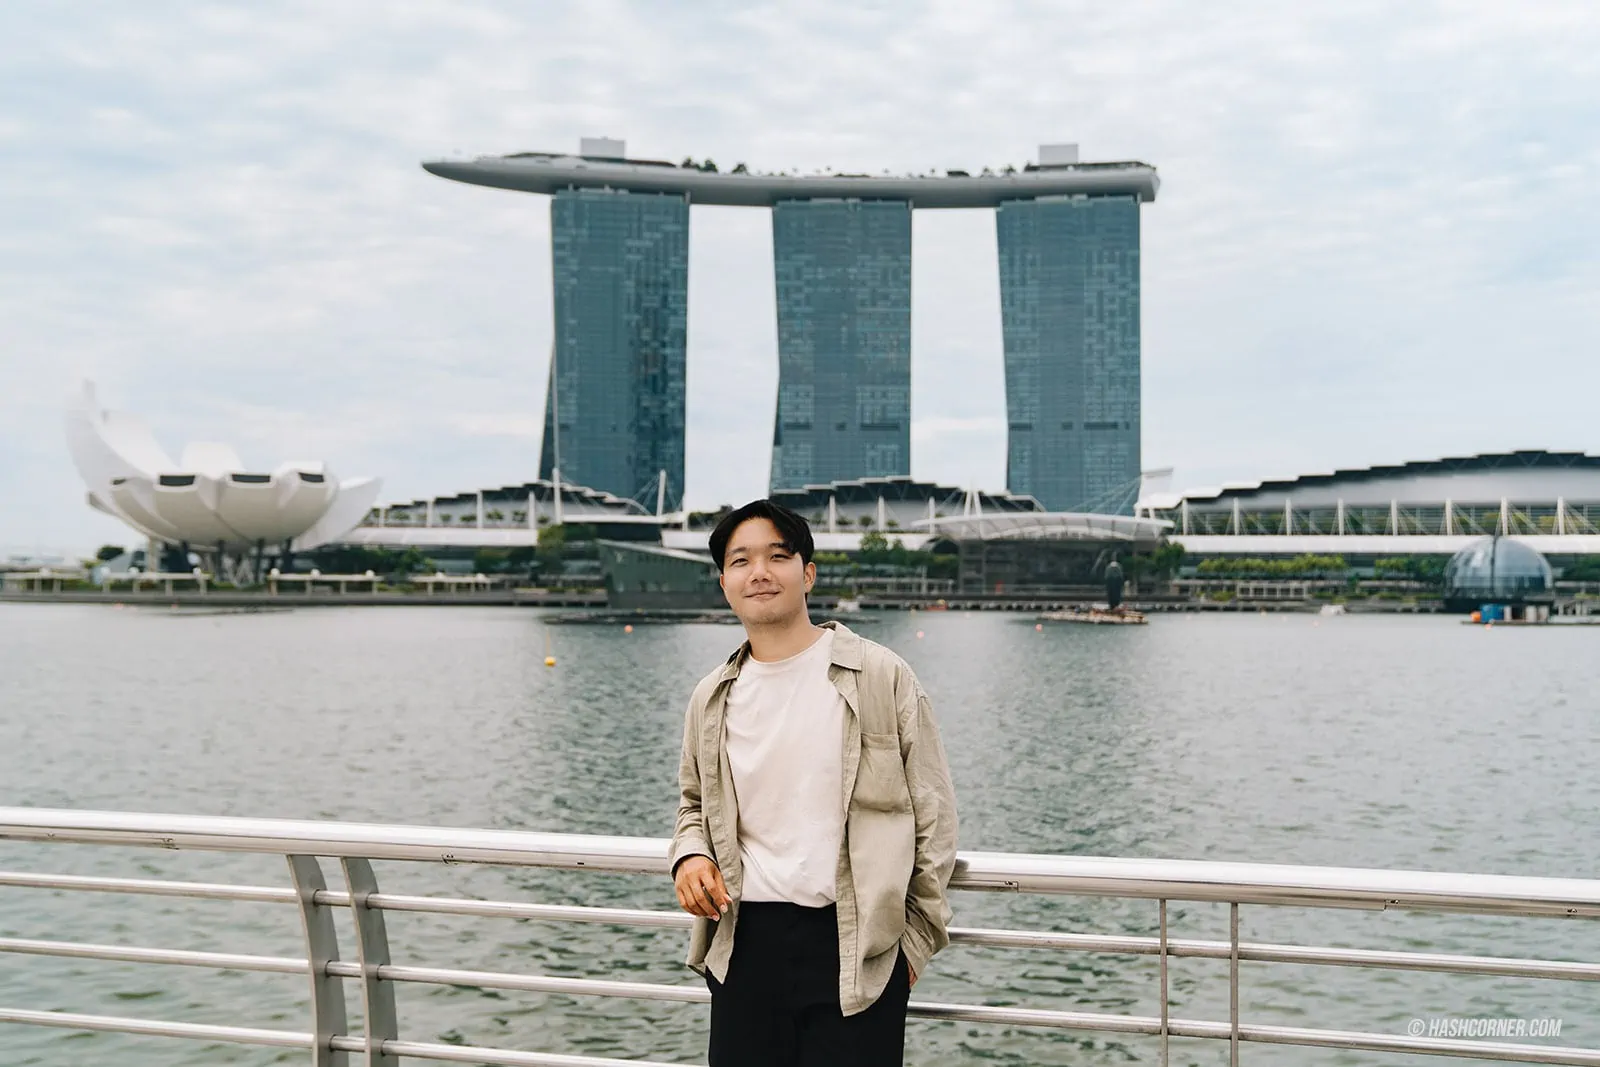 รีวิว สิงคโปร์ (Singapore) เที่ยวจัดเต็ม 28 ที่เที่ยว แบบฉ่ำ!